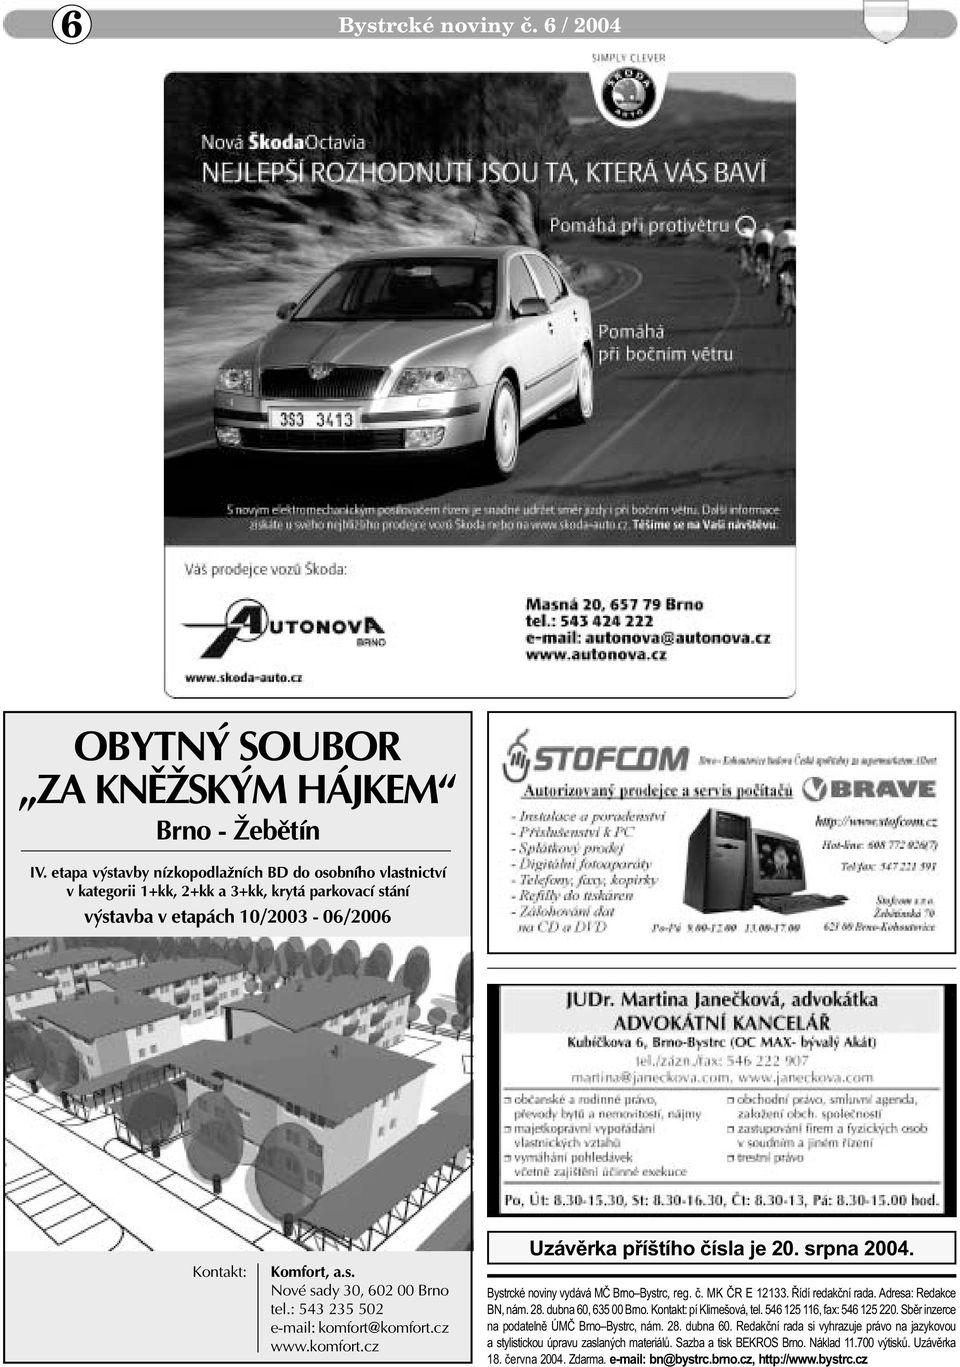 : 543 235 502 e-mail: komfort@komfort.cz www.komfort.cz Uzávìrka pøíštího èísla je 20. srpna 2004. Bystrcké noviny vydává MÈ Brno Bystrc, reg. è. MK ÈR E 12133. Øídí redakèní rada.